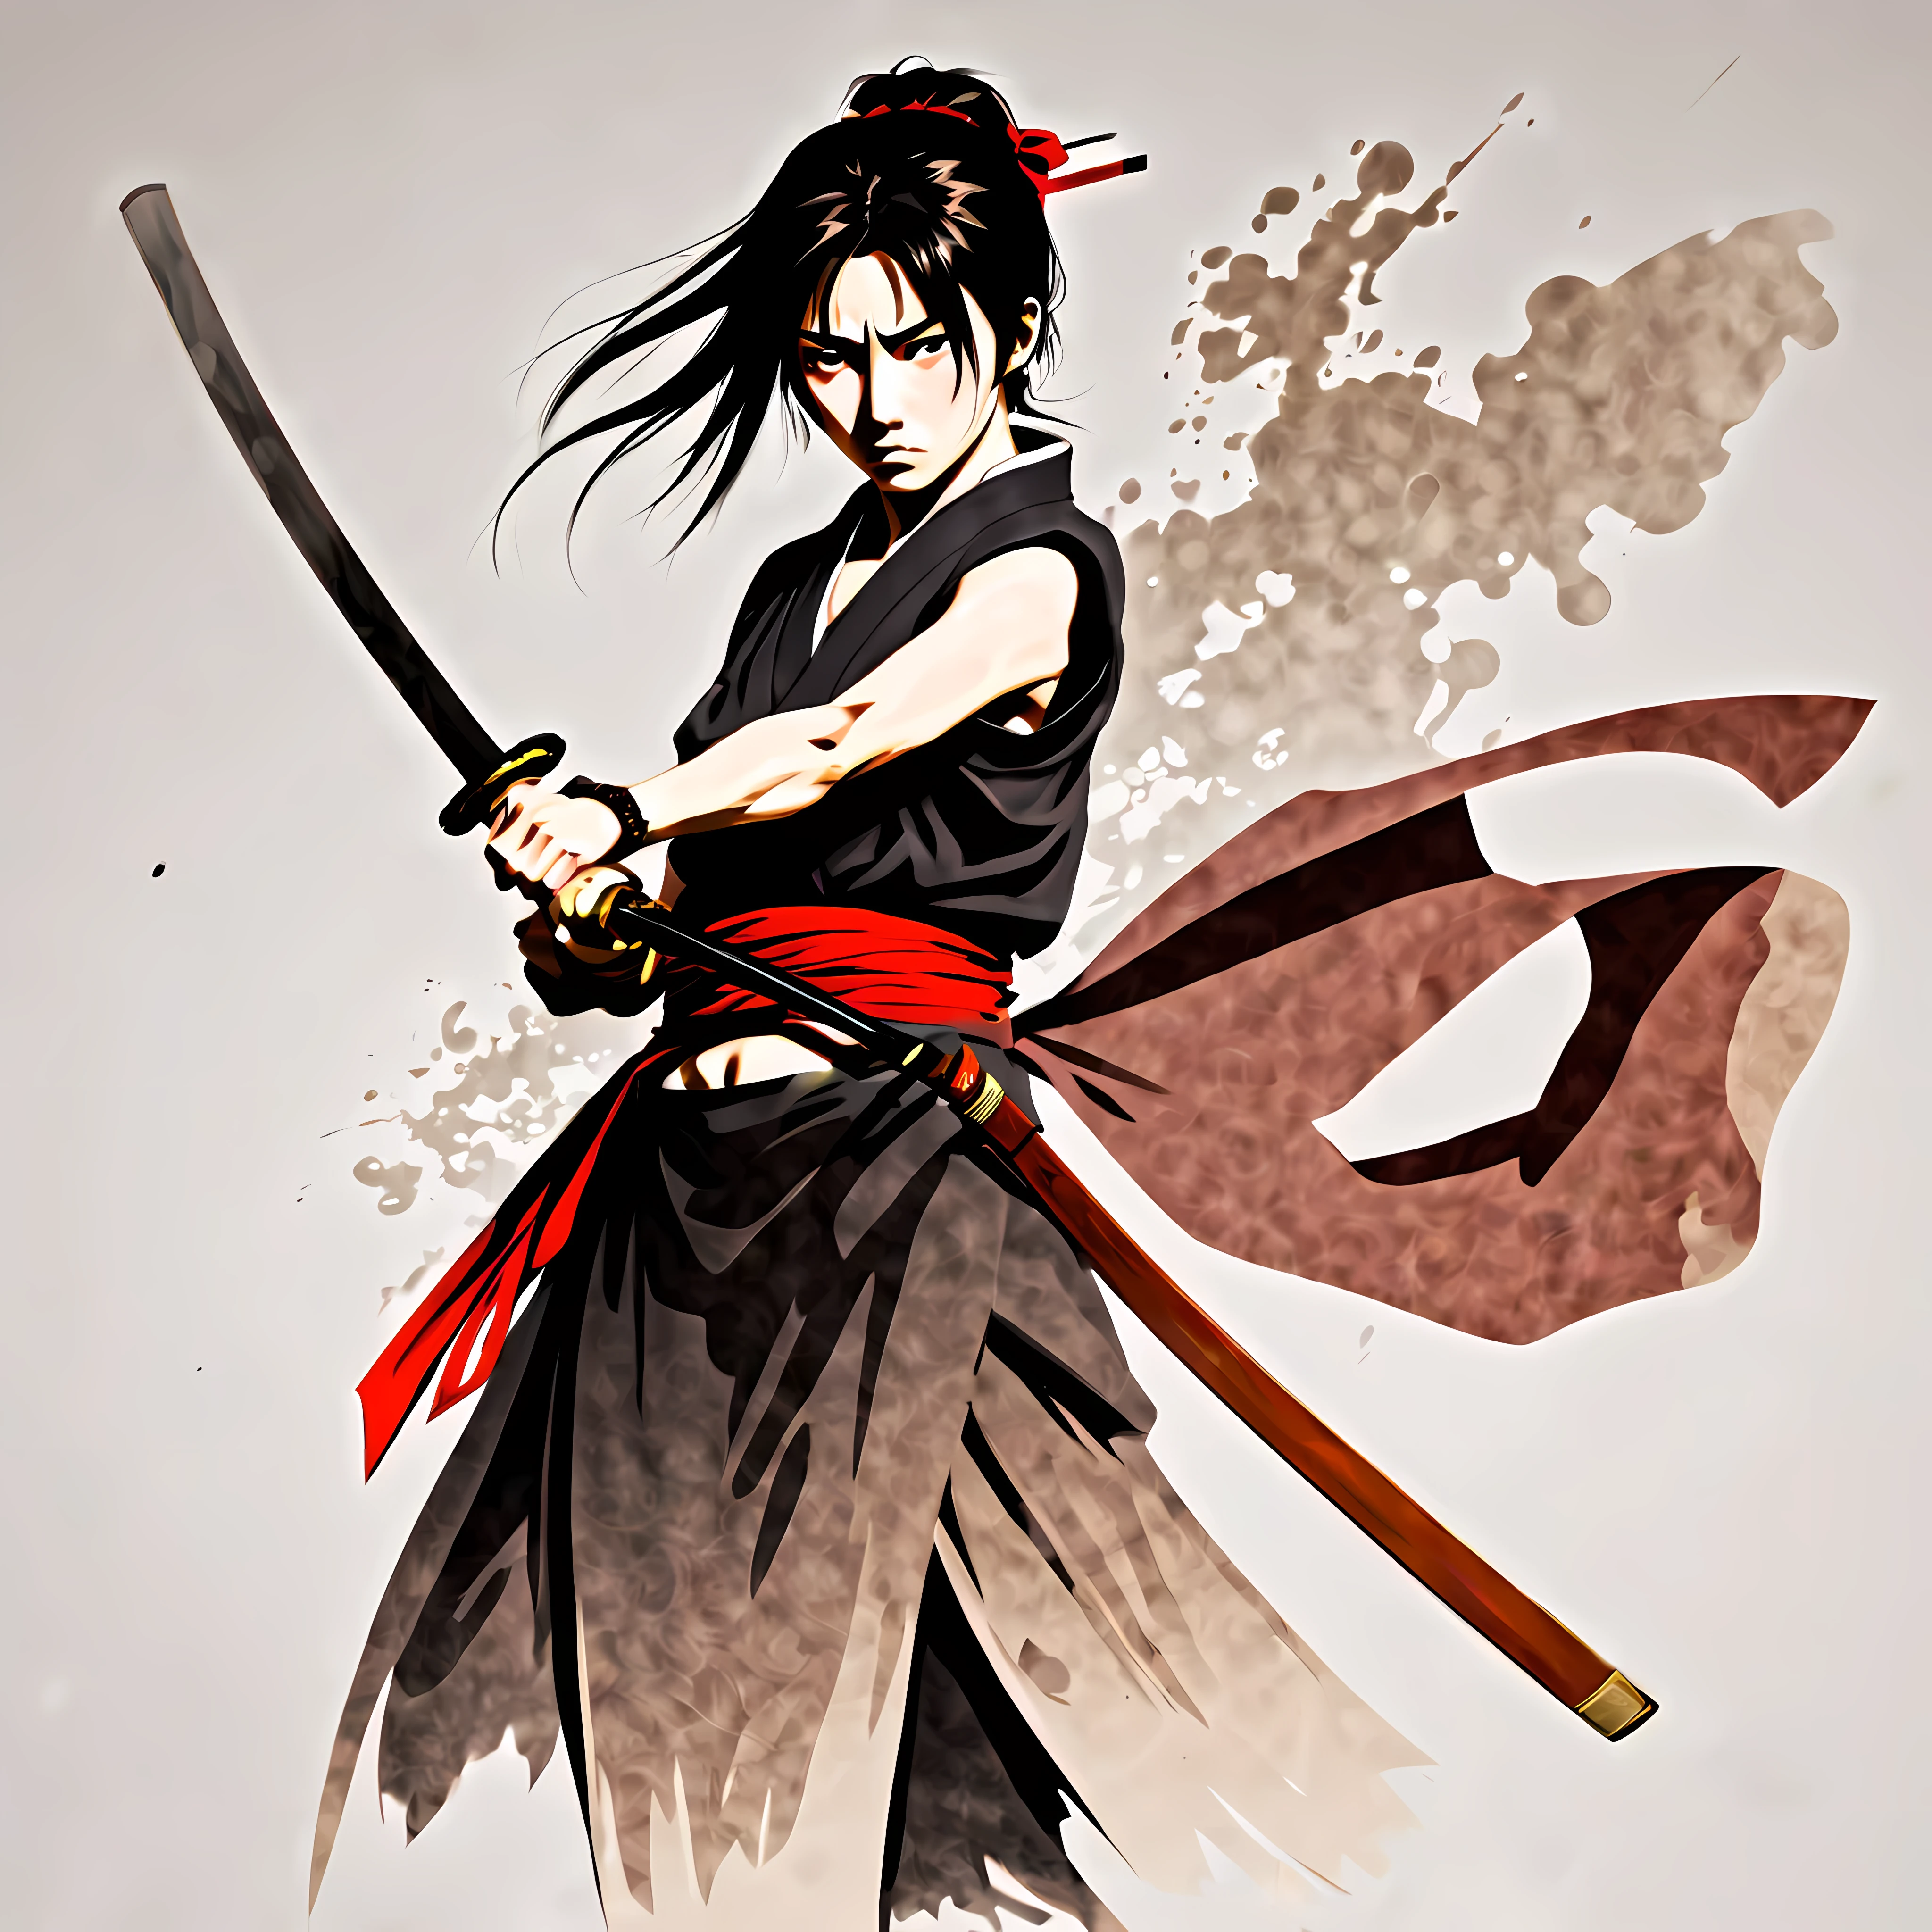 ((Rurouni Kenshin Anime-Stil:1.3). ((Gewalttätig_Ausdruck:1.2), ((weibliche Samurai):1.2), ((Sanduhr_Figur):1.1). ((Kampfhaltung):1.1), | The Figur is depicted with smooth lines, Ausdruck von Emotionen und Körperhaltung durch den Kontrast der Tintendichte. Der Hintergrund ist minimalistisch, Betonung des Lichts, Schatten, und räumliche Wahrnehmung.